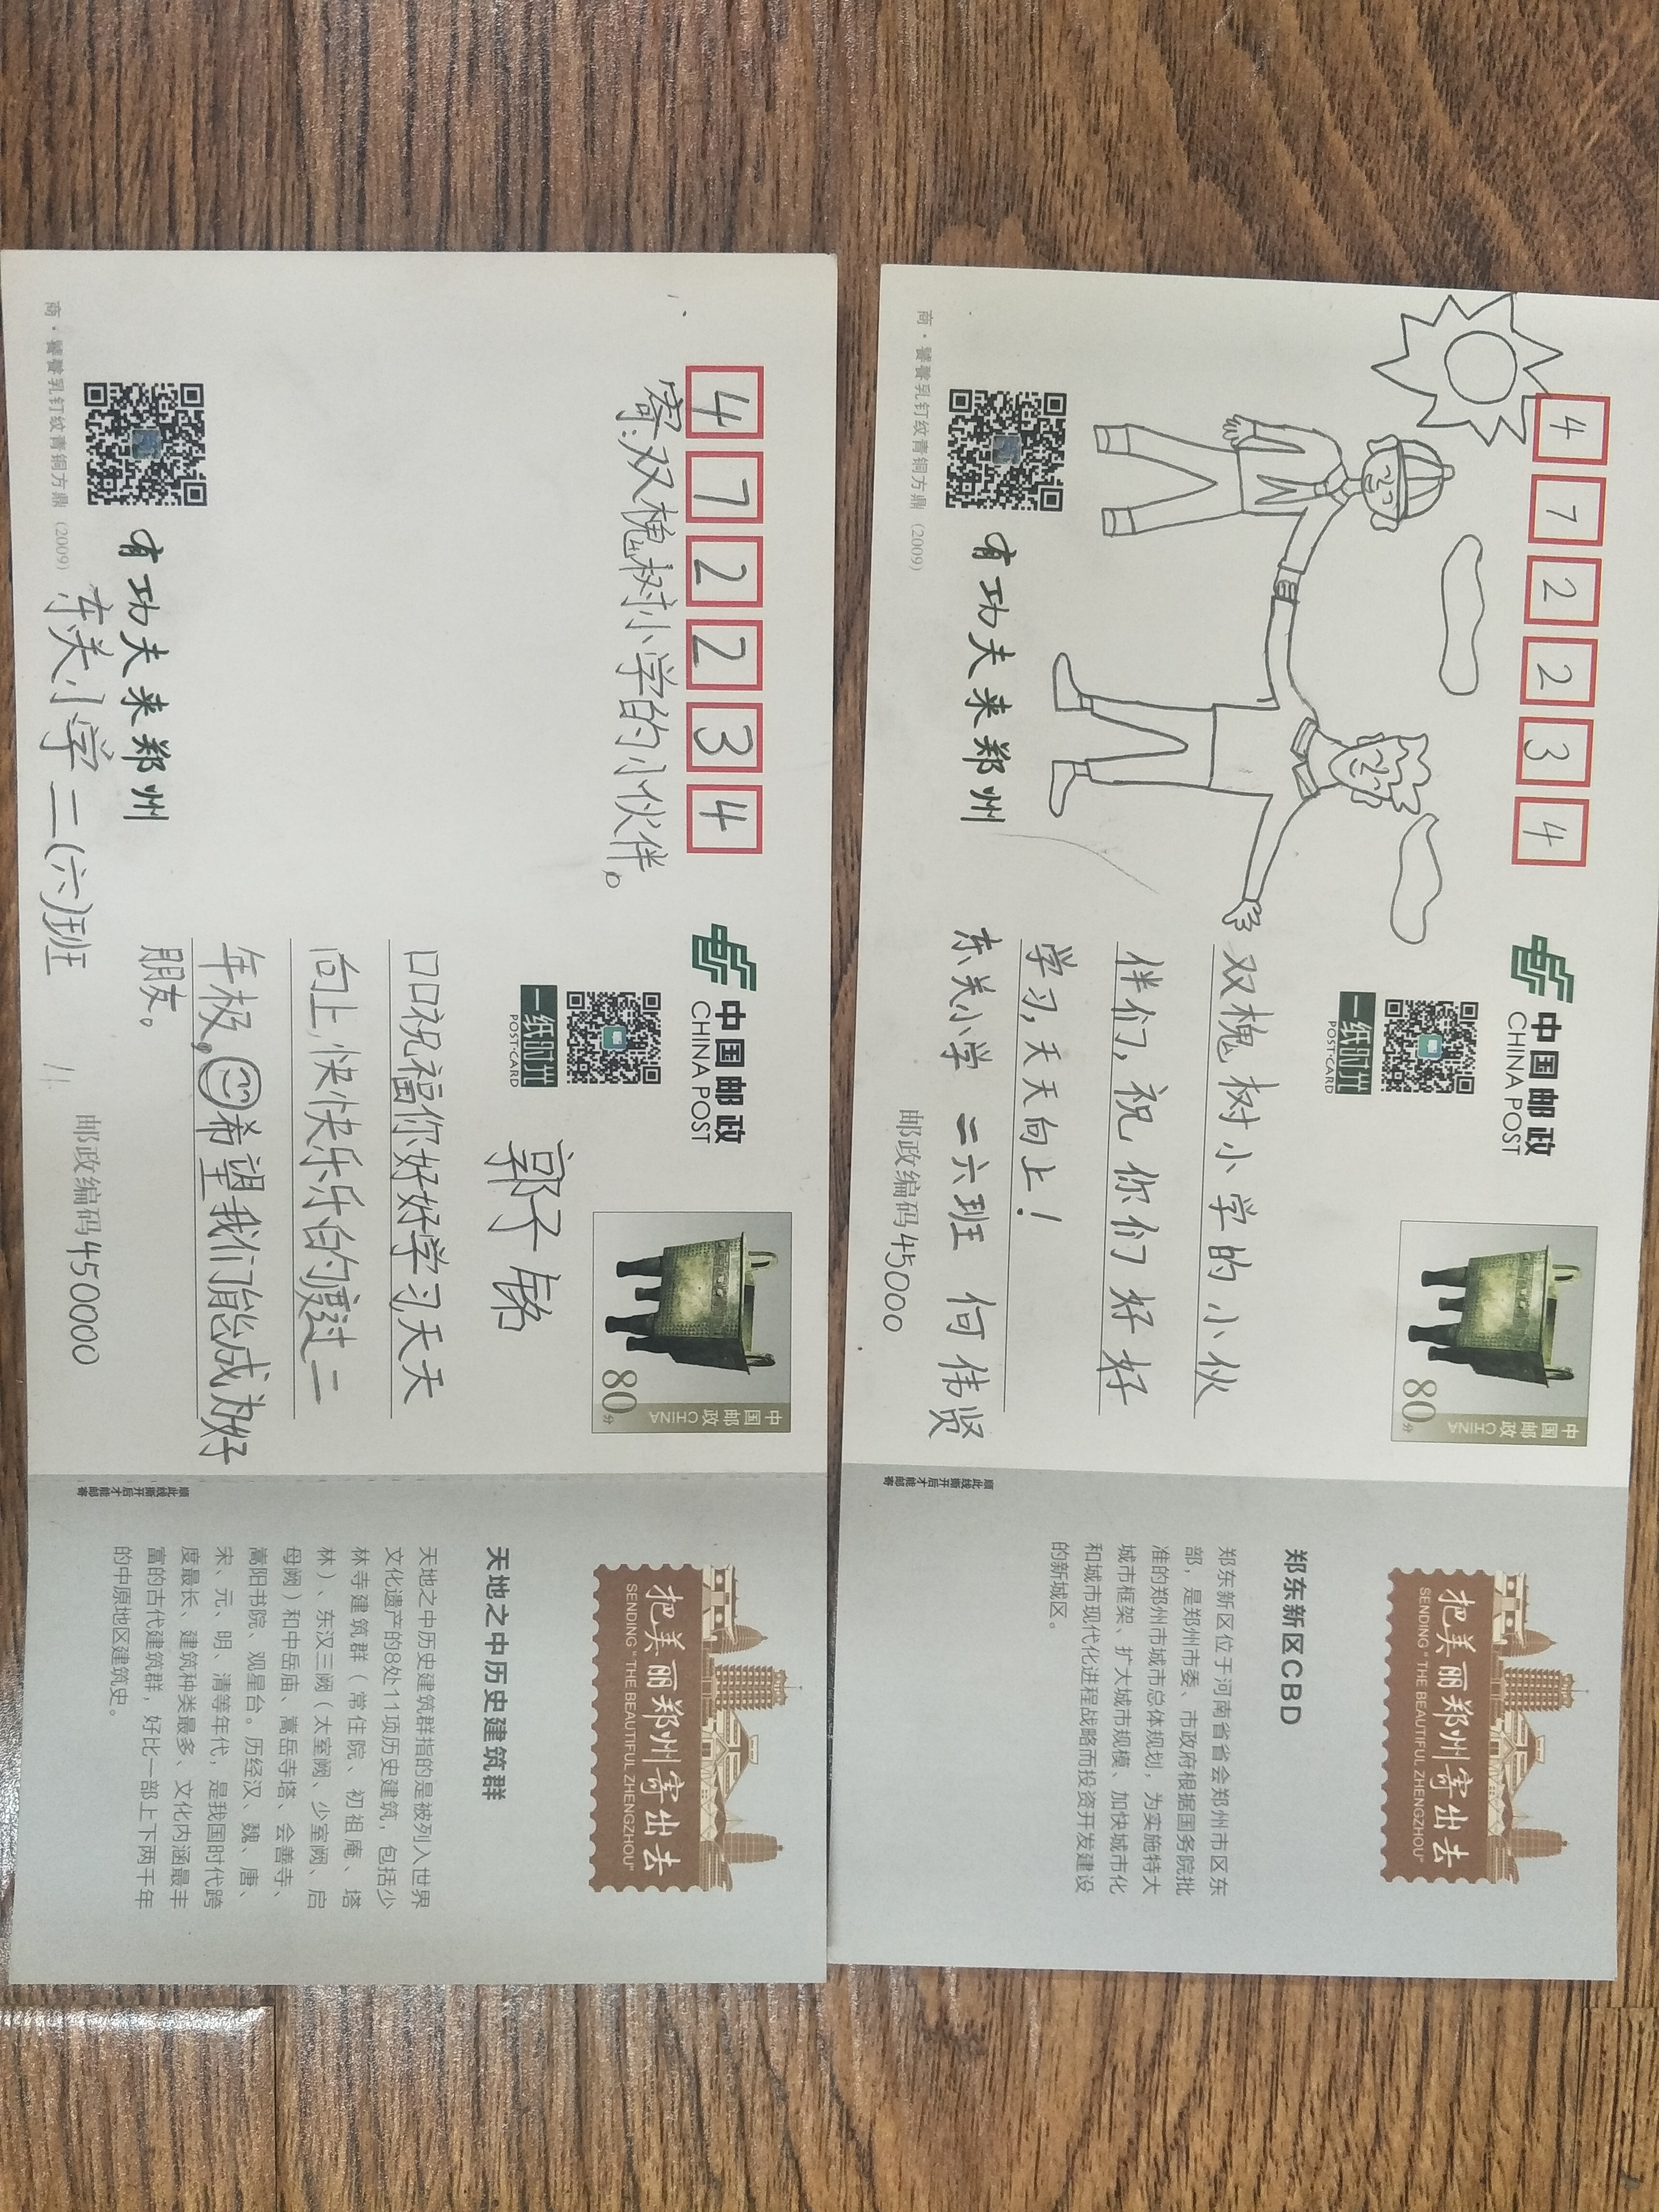 郑州市东关小学友情是一张张寄出的明信片